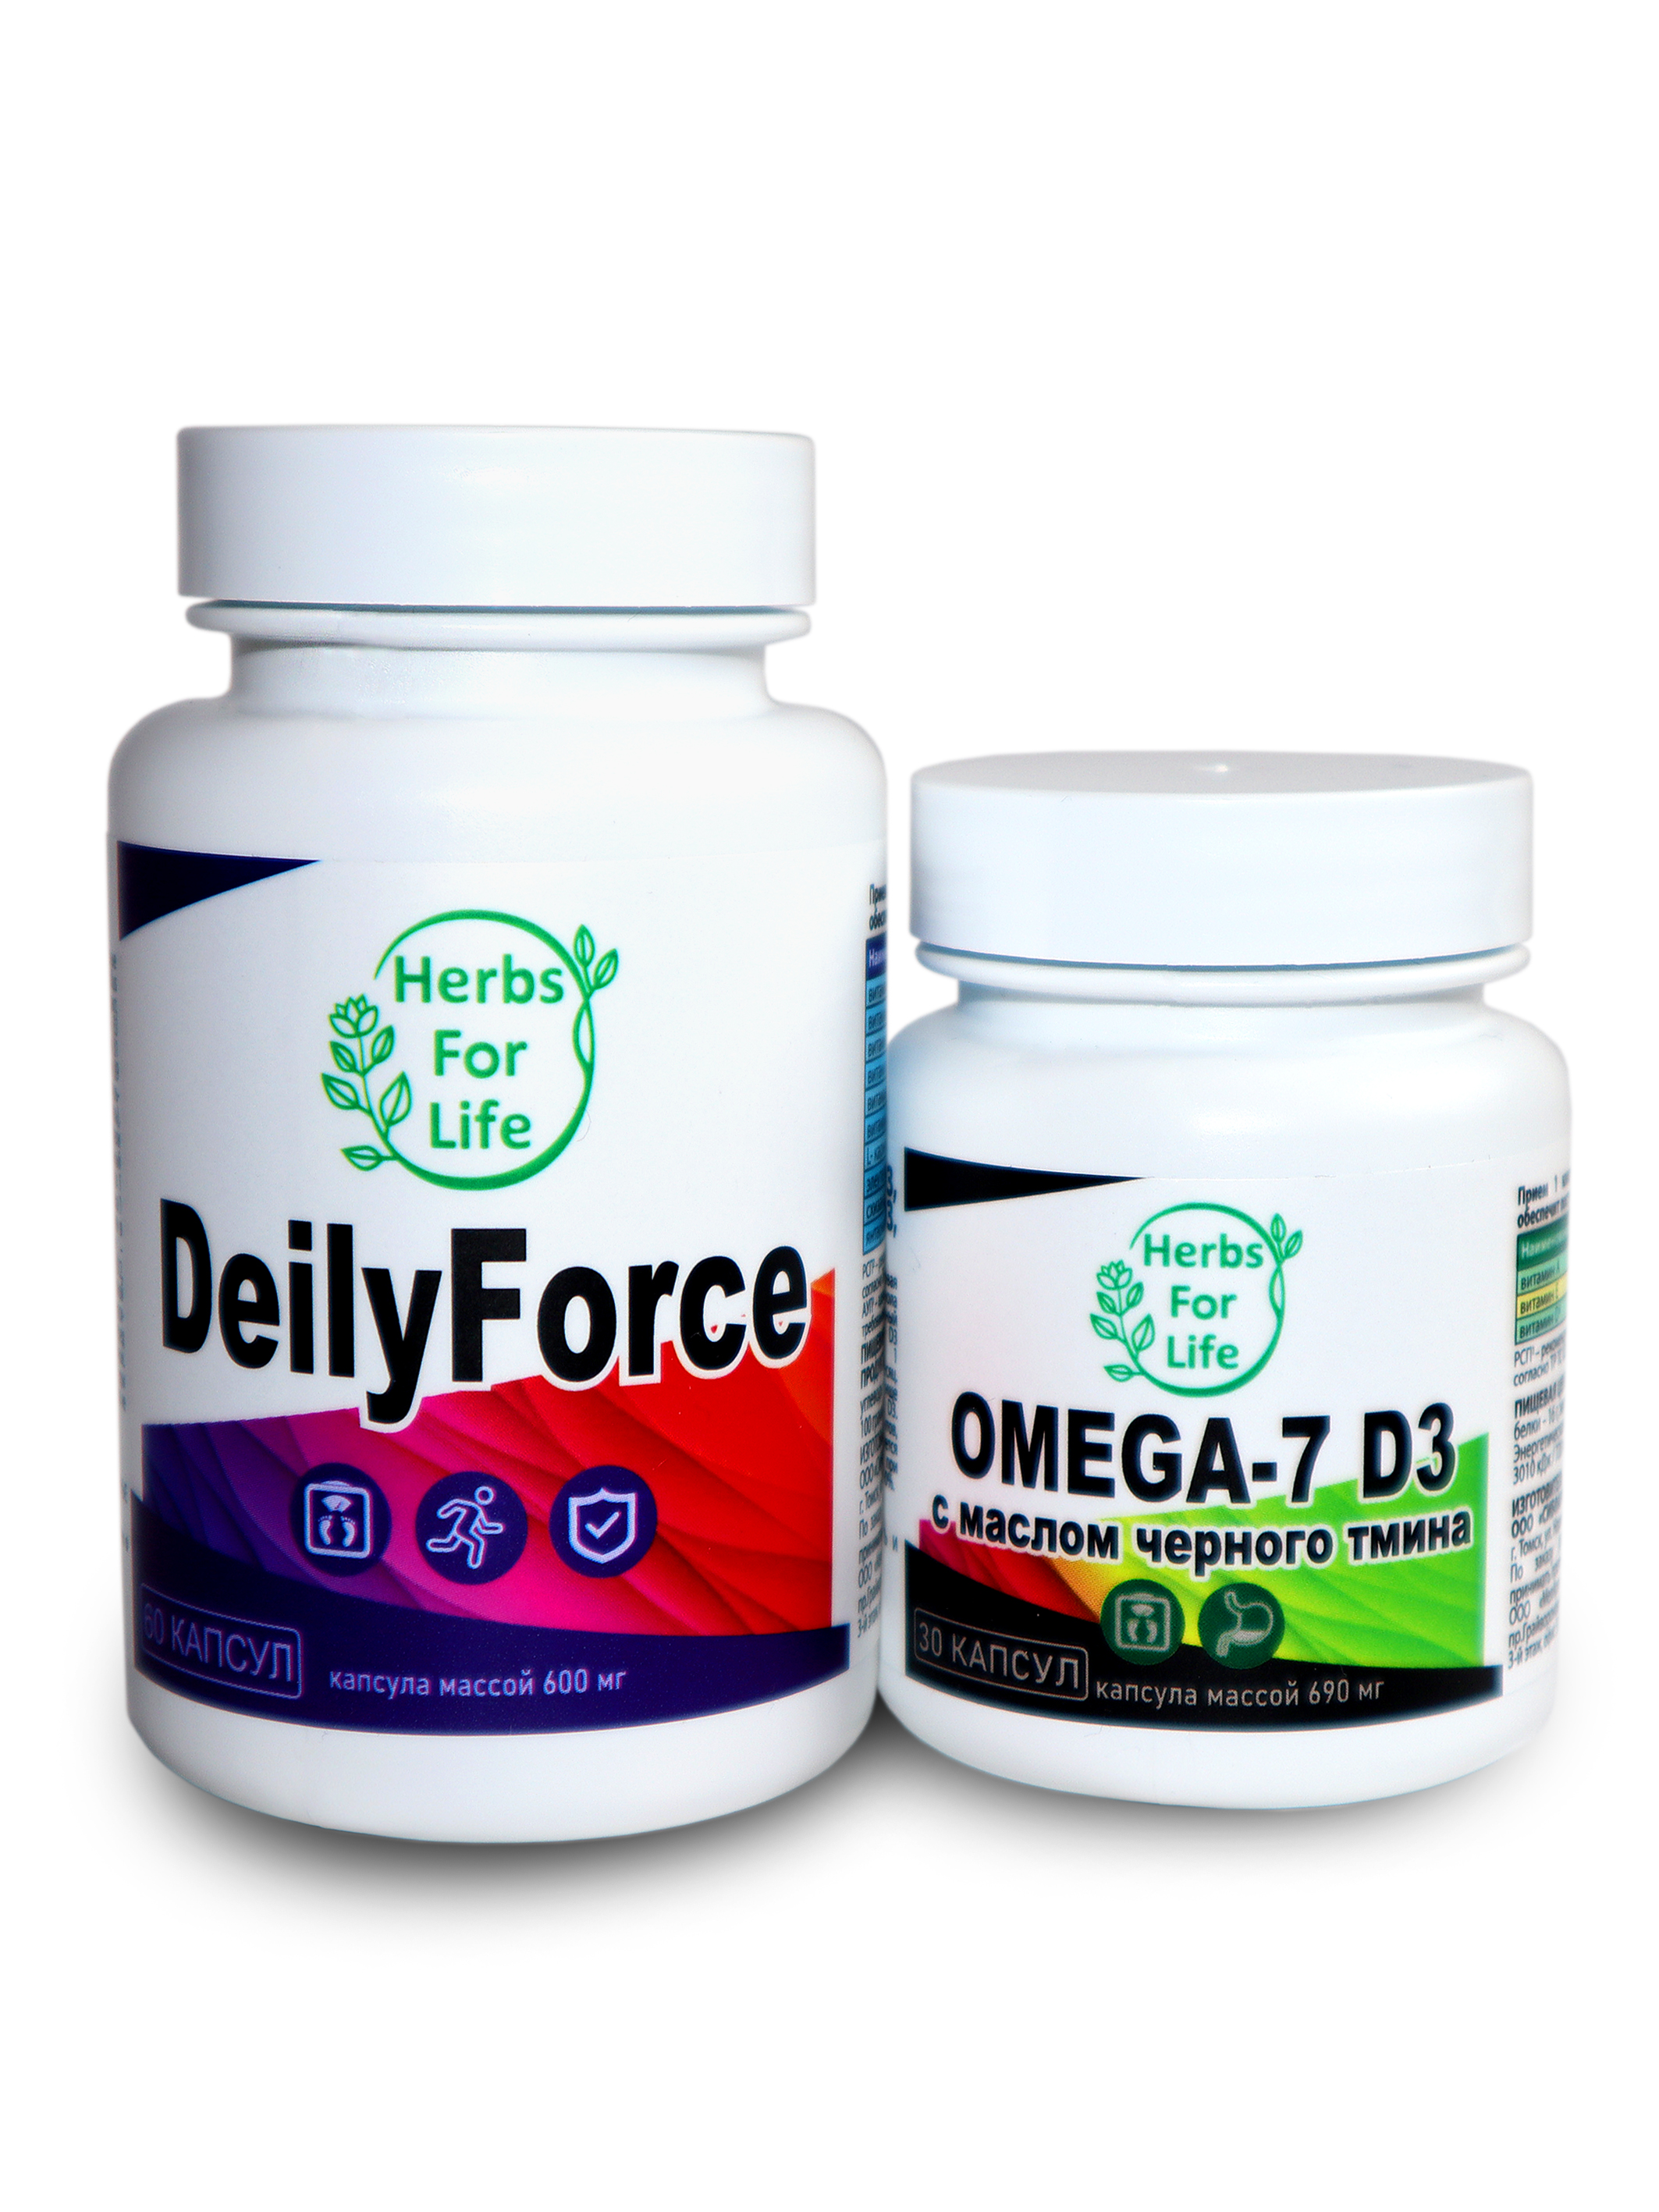 Купить Herbs For Life DeilyForce капсулы 600 мг 60 шт. + Omega-7 D3 капсулы 690 мг 30 шт.